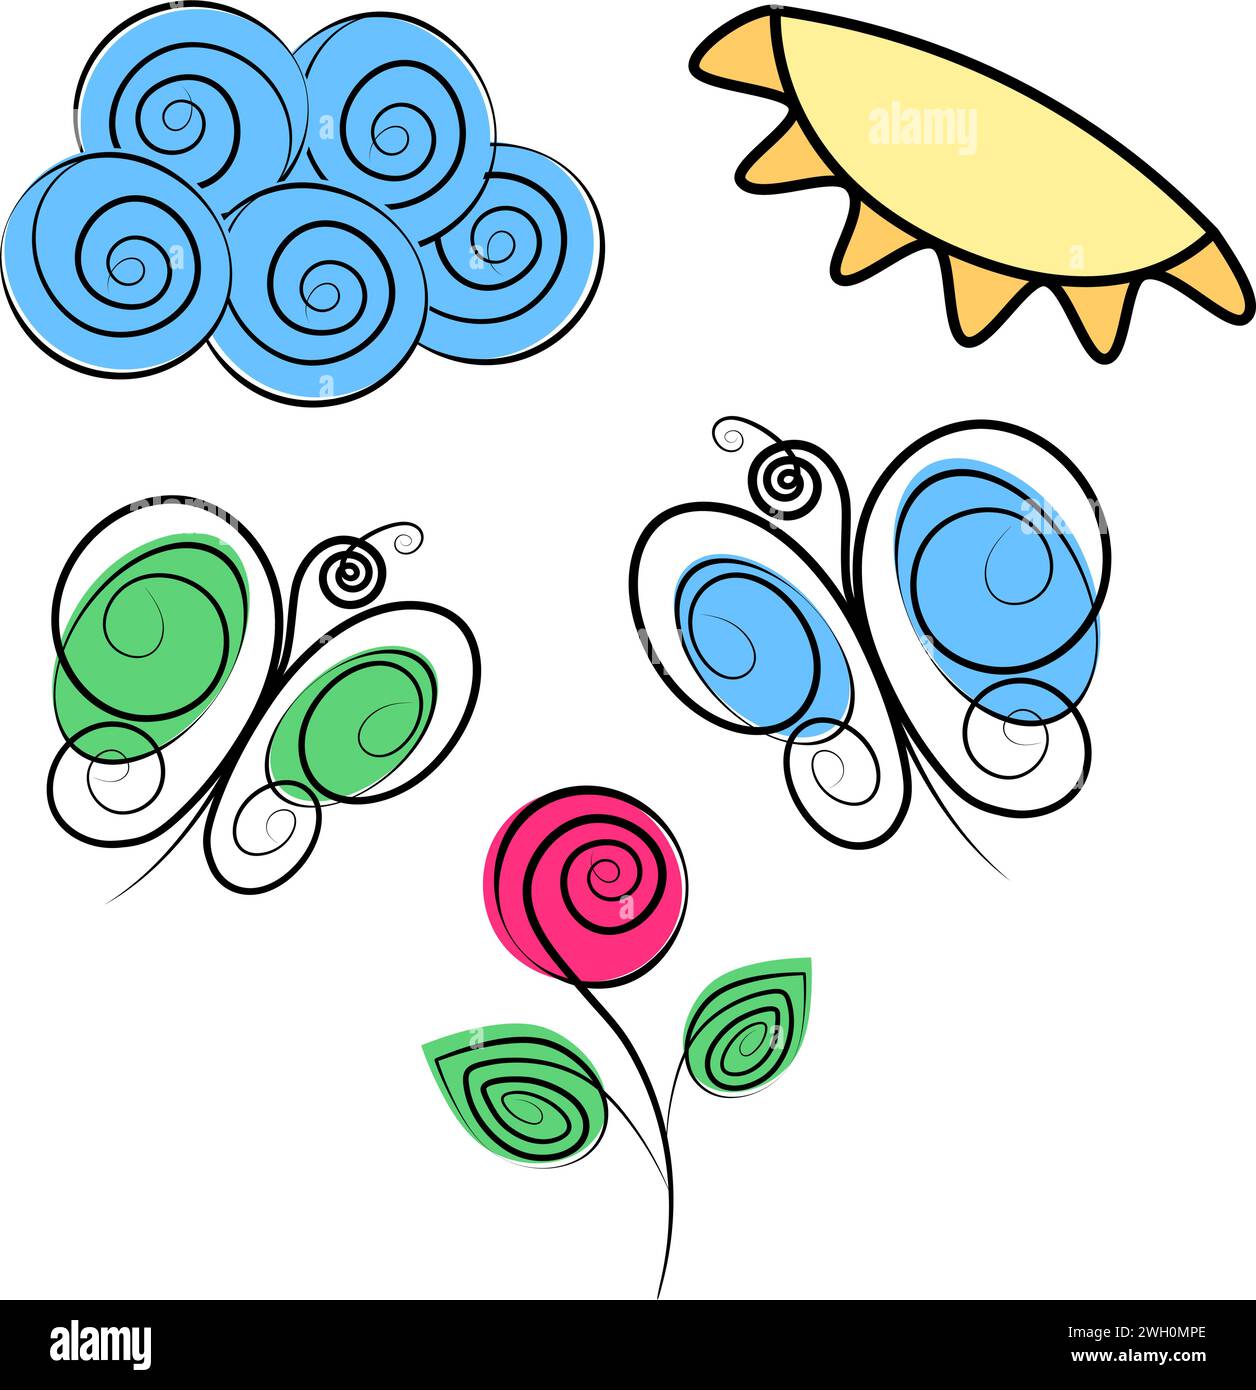 Nuvola a spirale, sole, farfalle e rosa fiorita nei colori dei marcatori. SER di 5 elementi di design stilizzati. Isolare. EPS. Concetto vettoriale per saluti o inviti, poster, banner, brochure, cartelloni pubblicitari o Web Illustrazione Vettoriale